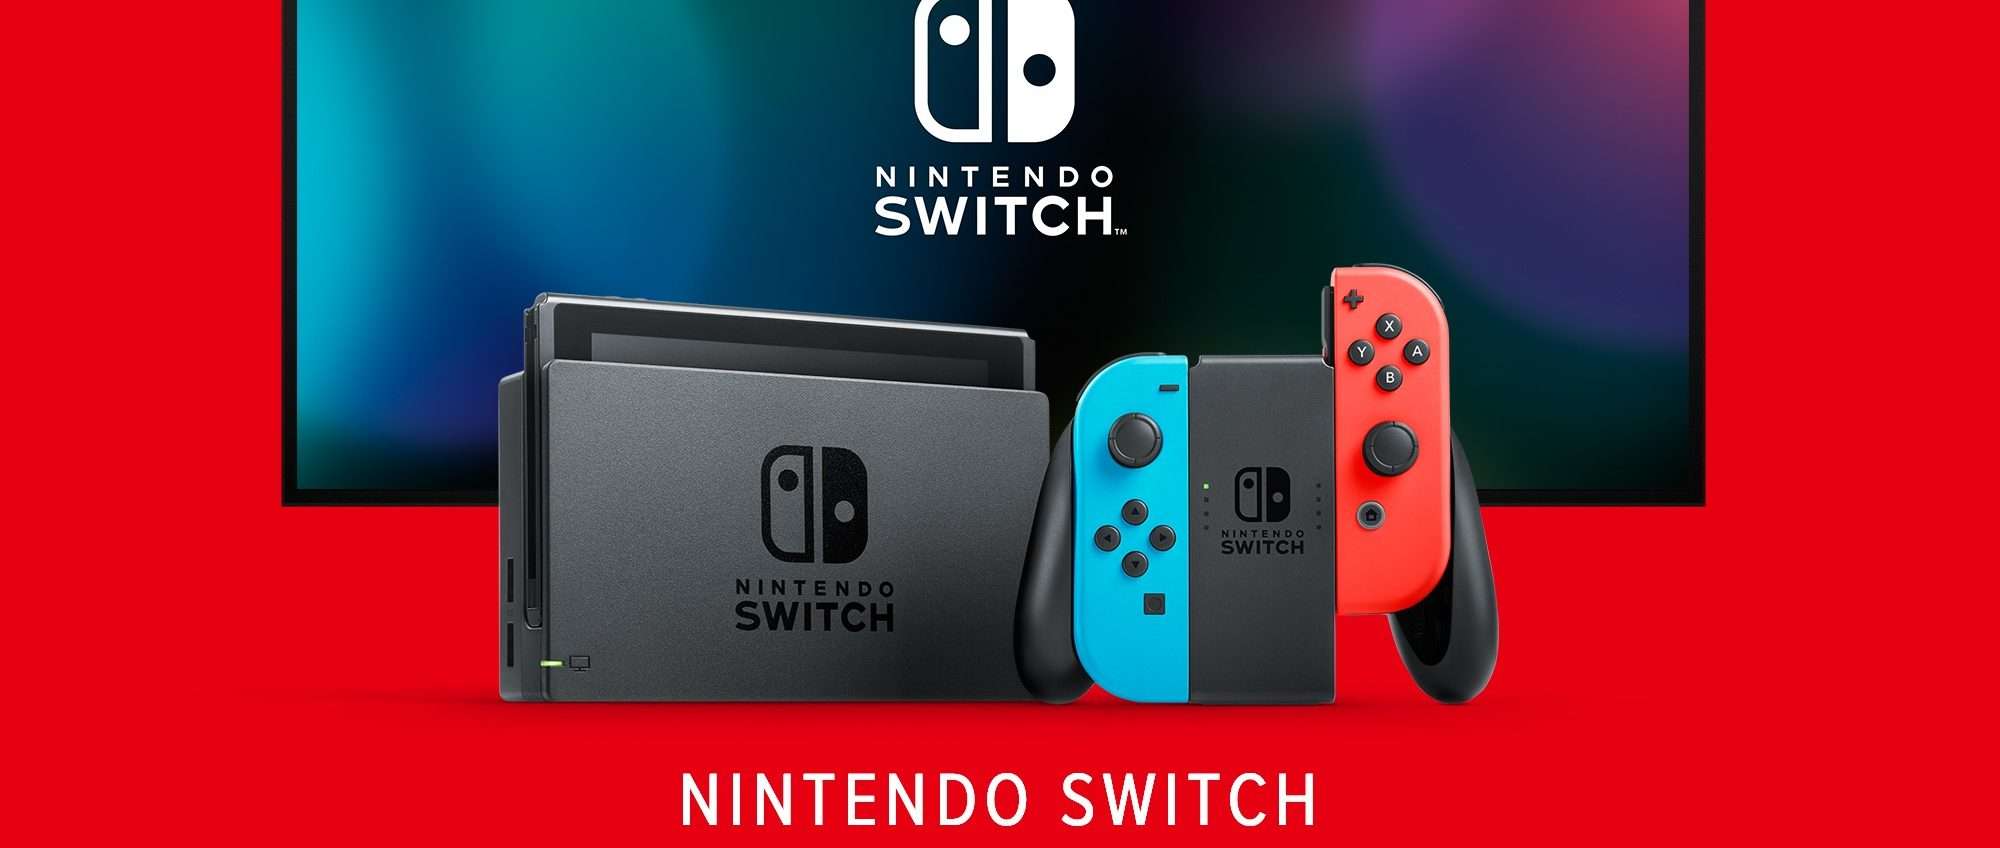 Ultime ore per avere la Nintendo Switch gratis scegliendo Sky